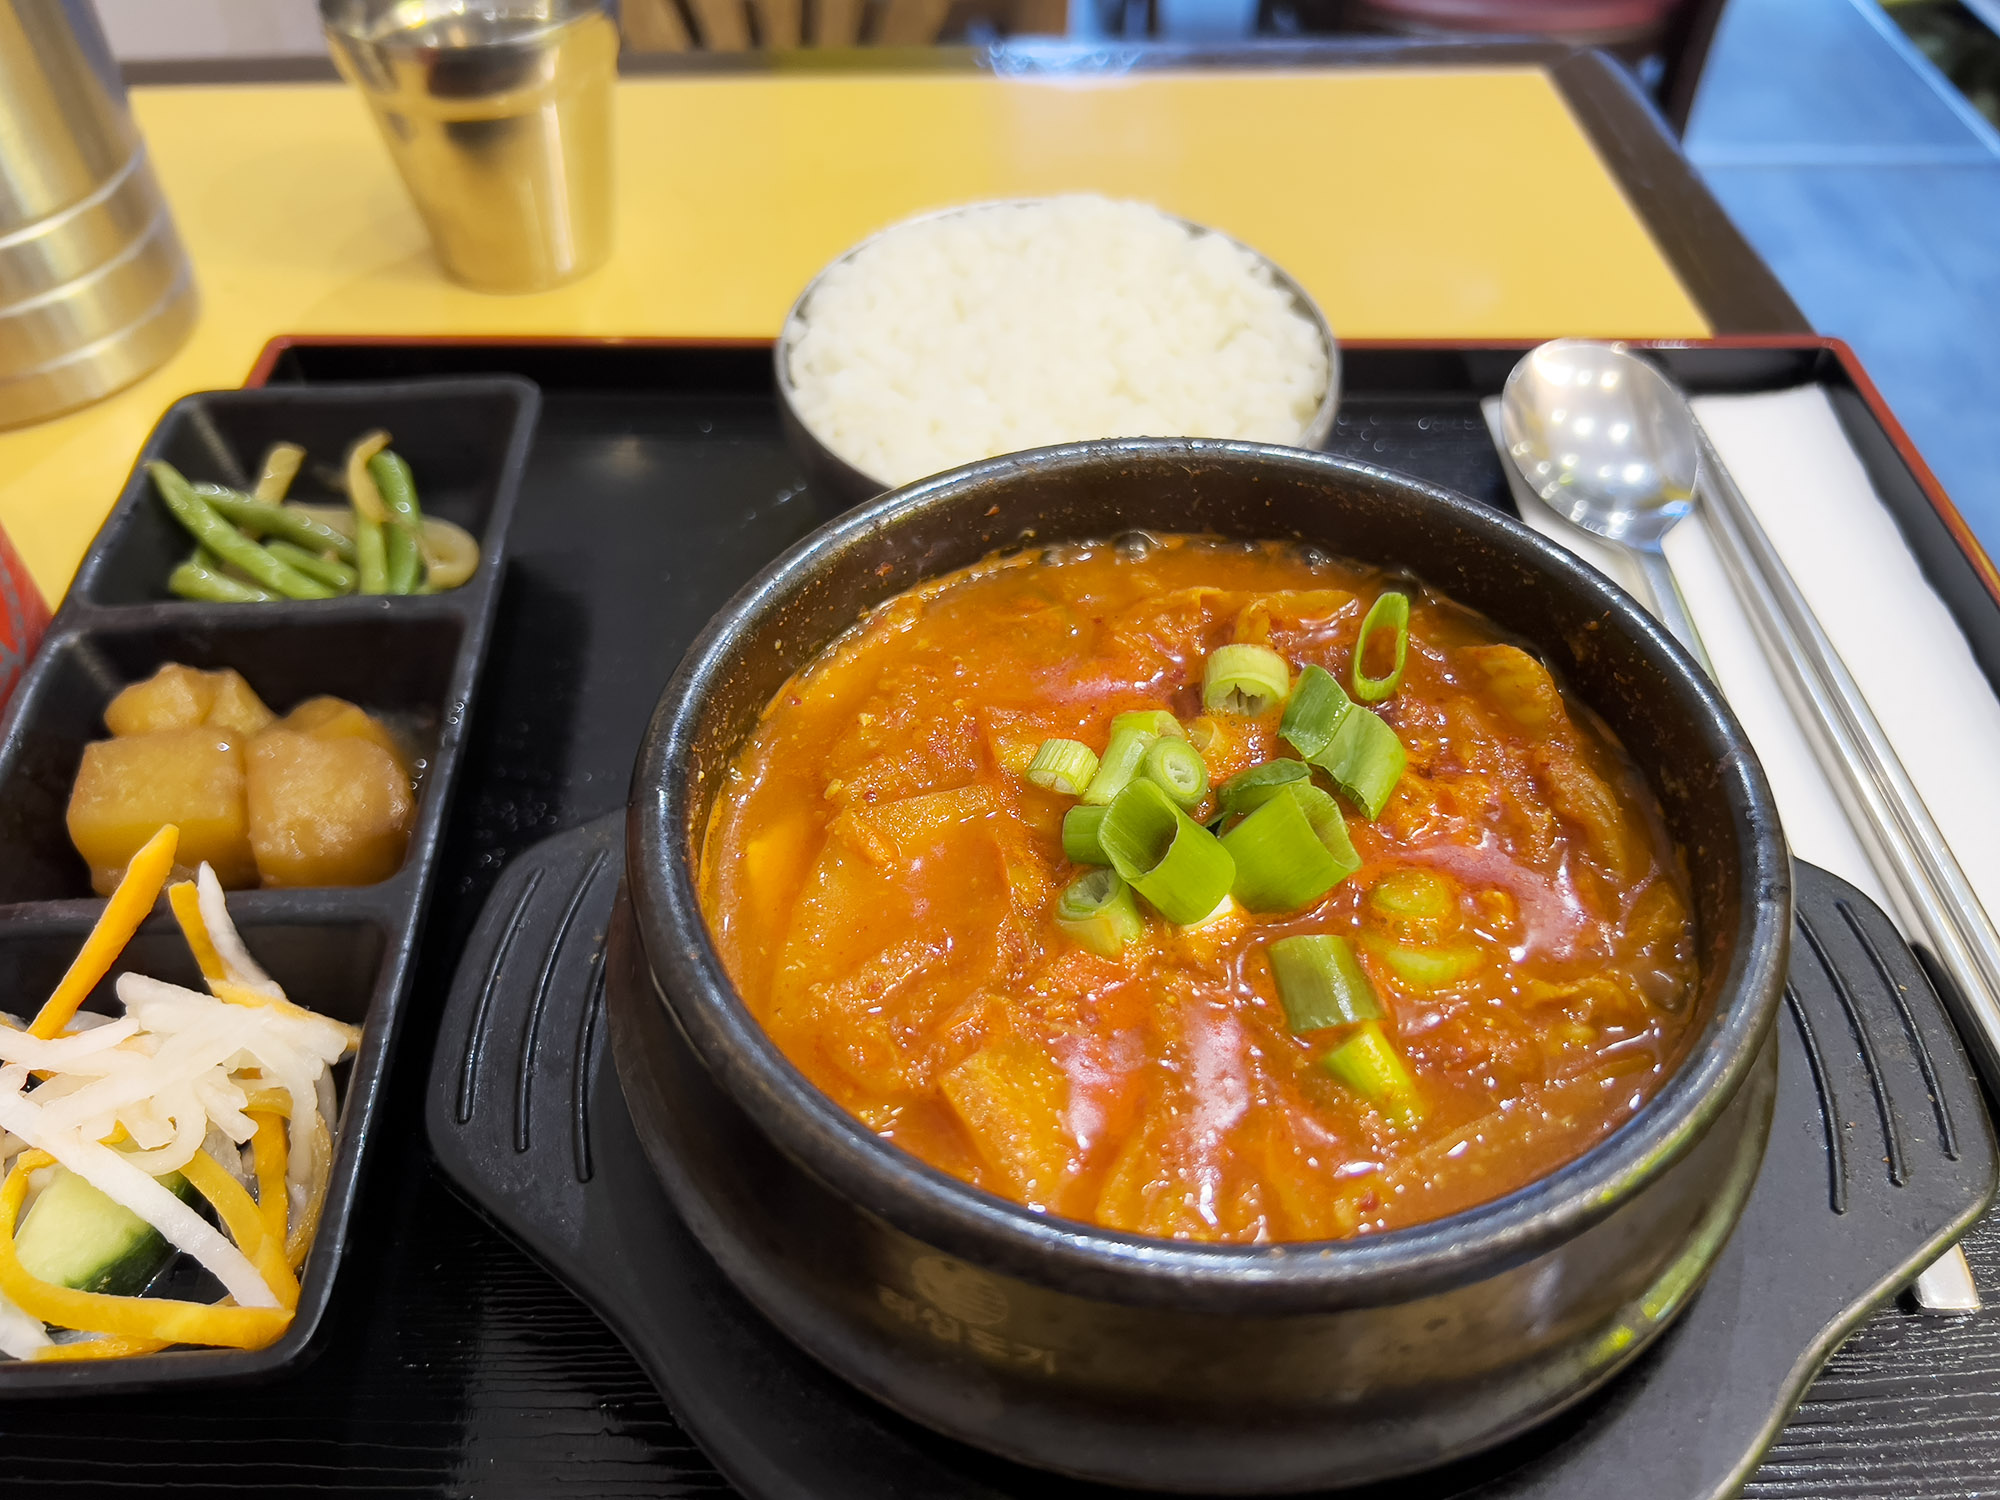  Little Seoul - Cozy Korean Restaurant in Passage de Choiseul, Paris Blog